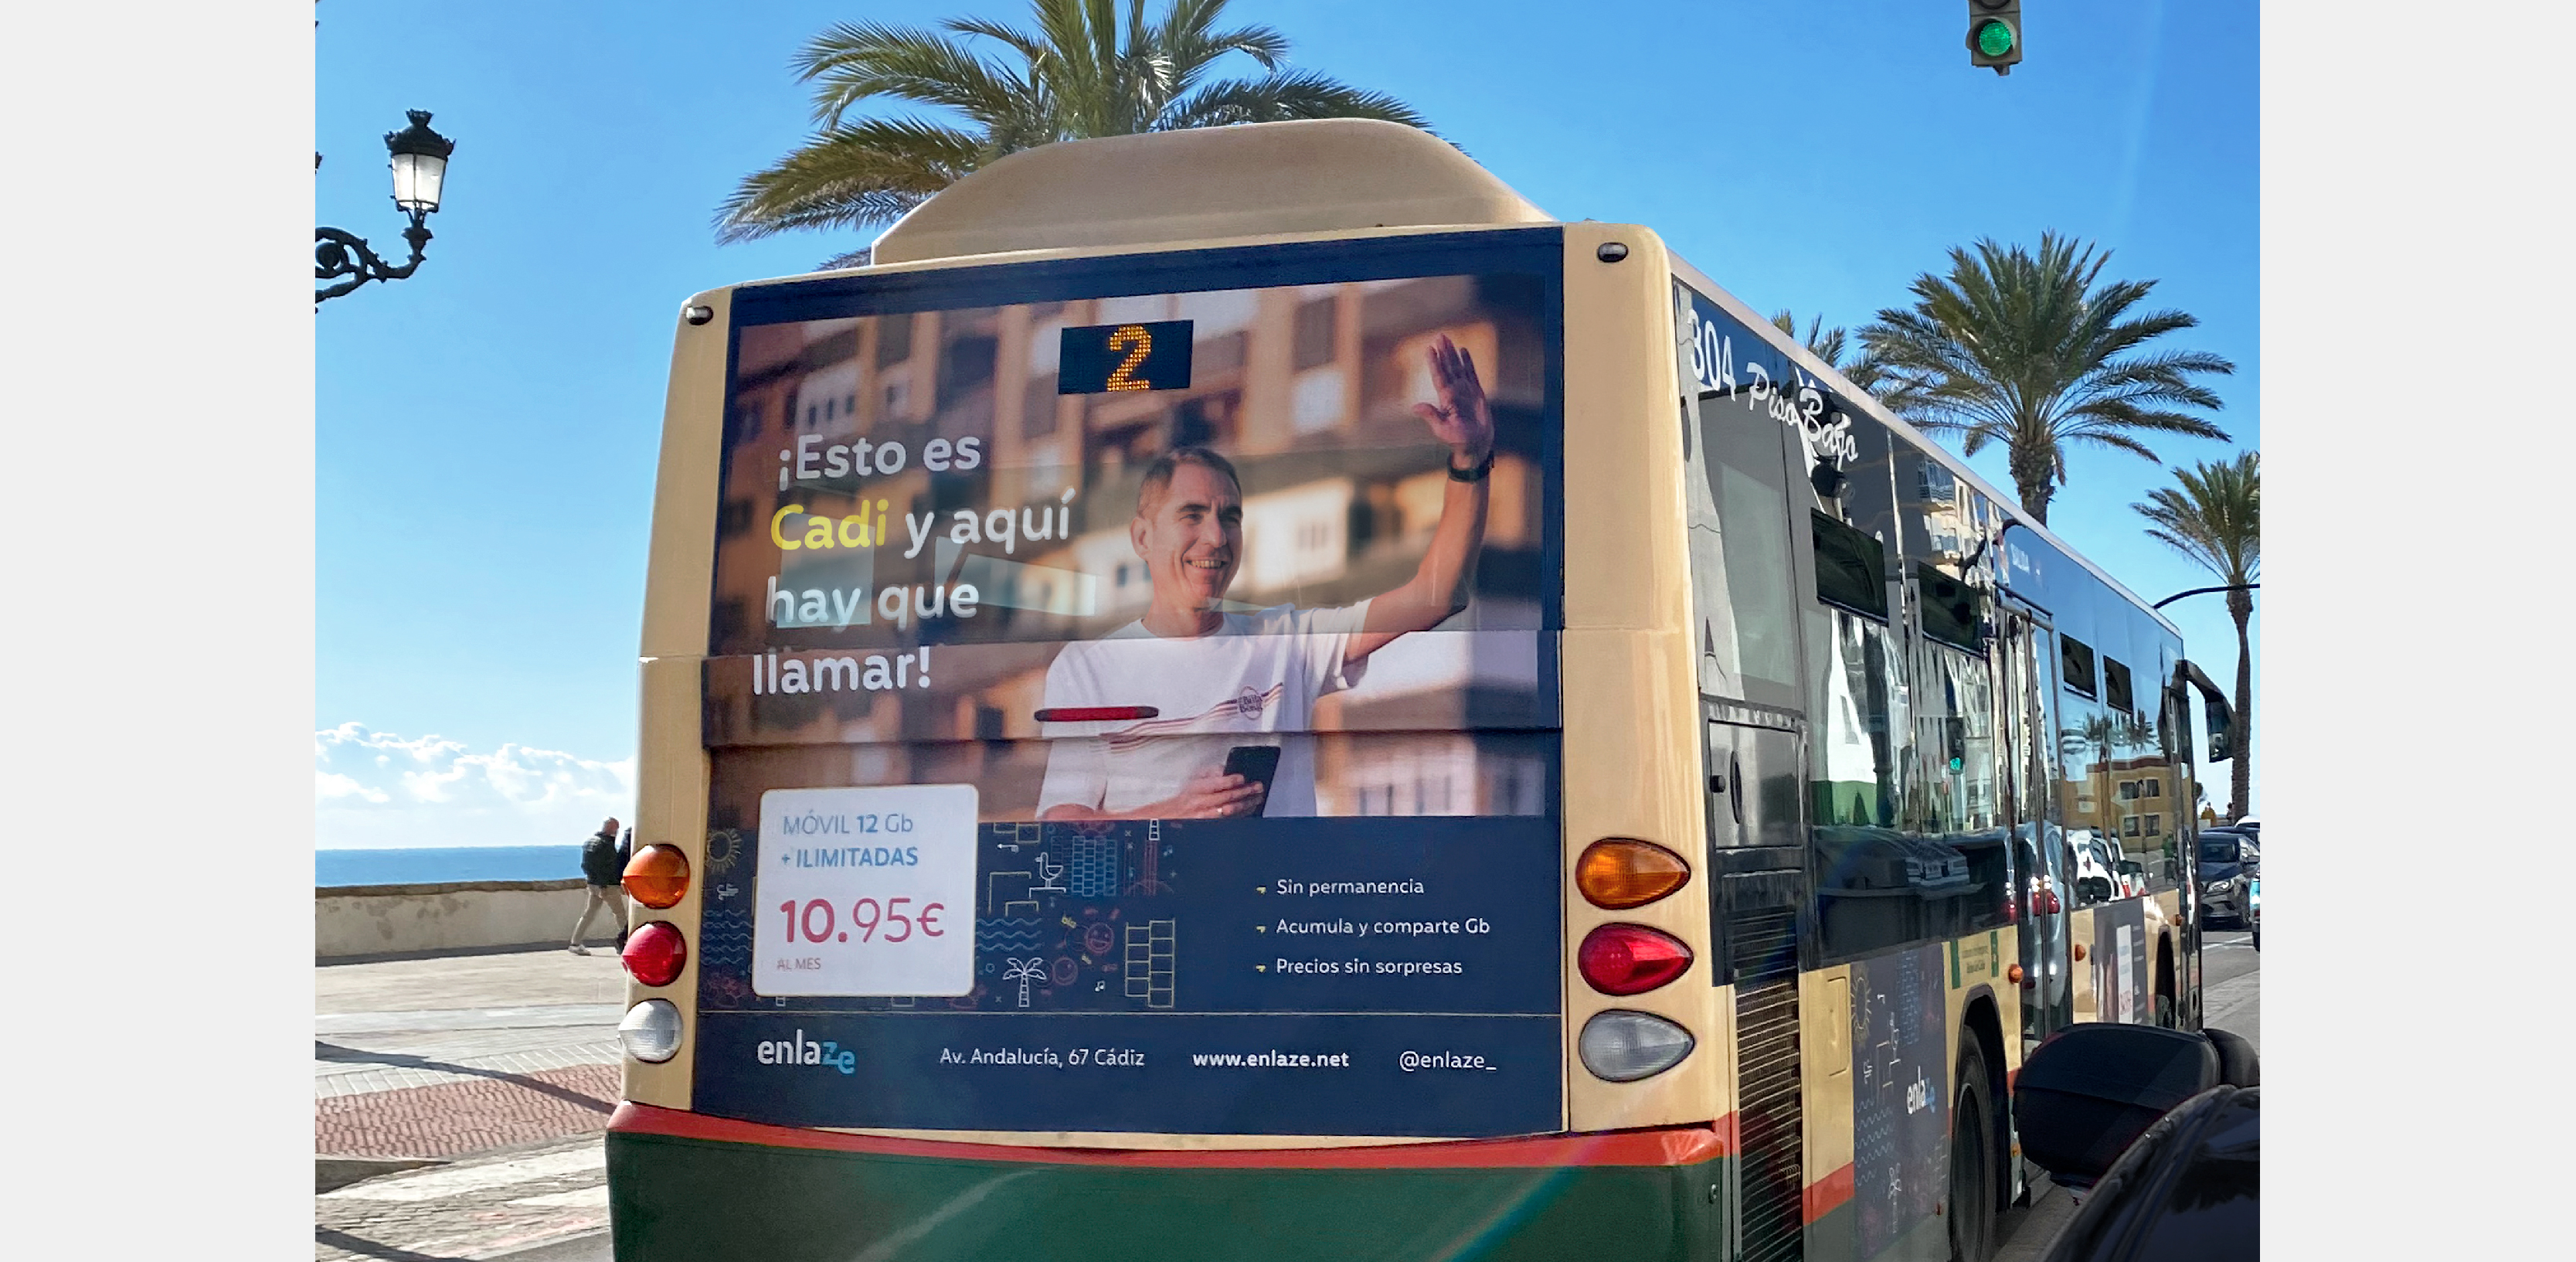 Activación de marca enlaze - La primera operadora de internet y móvil de Cádiz